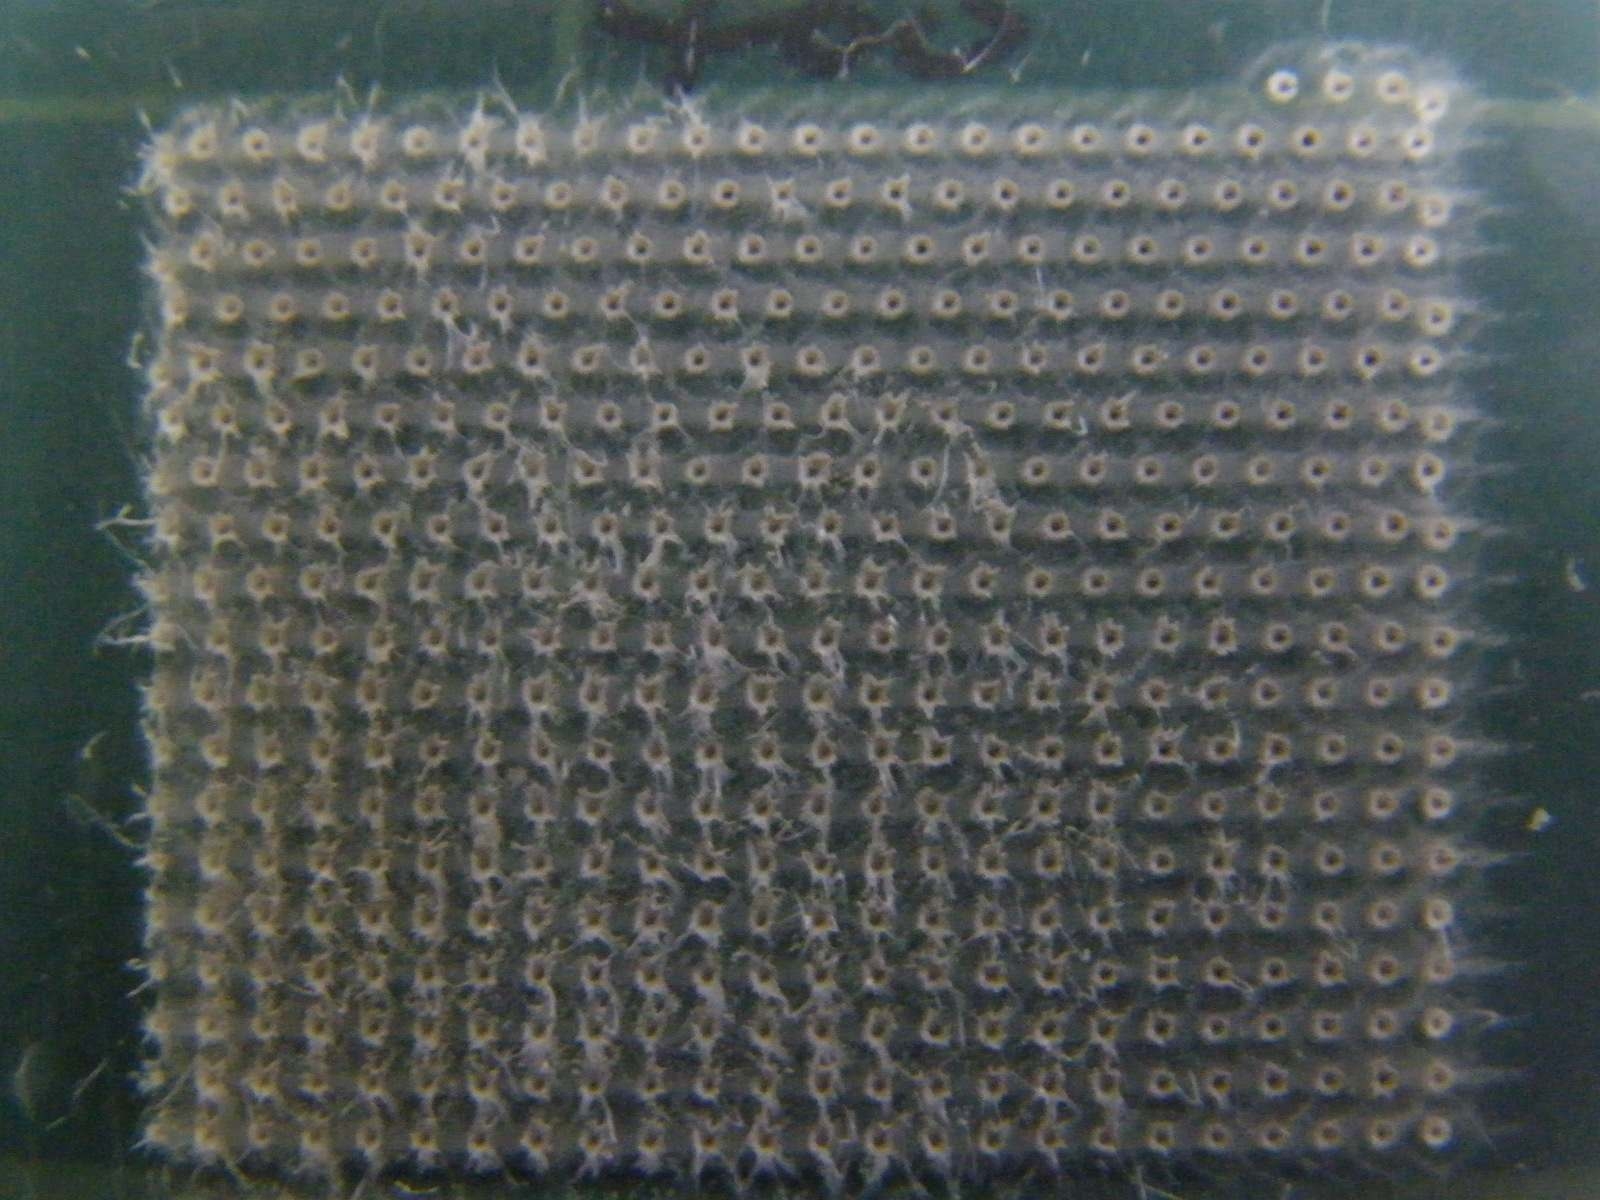 그림 3-23. 25 TW, 0.5 Hz 레이저로 조사된 400 μm 두께의 고체타겟 모습